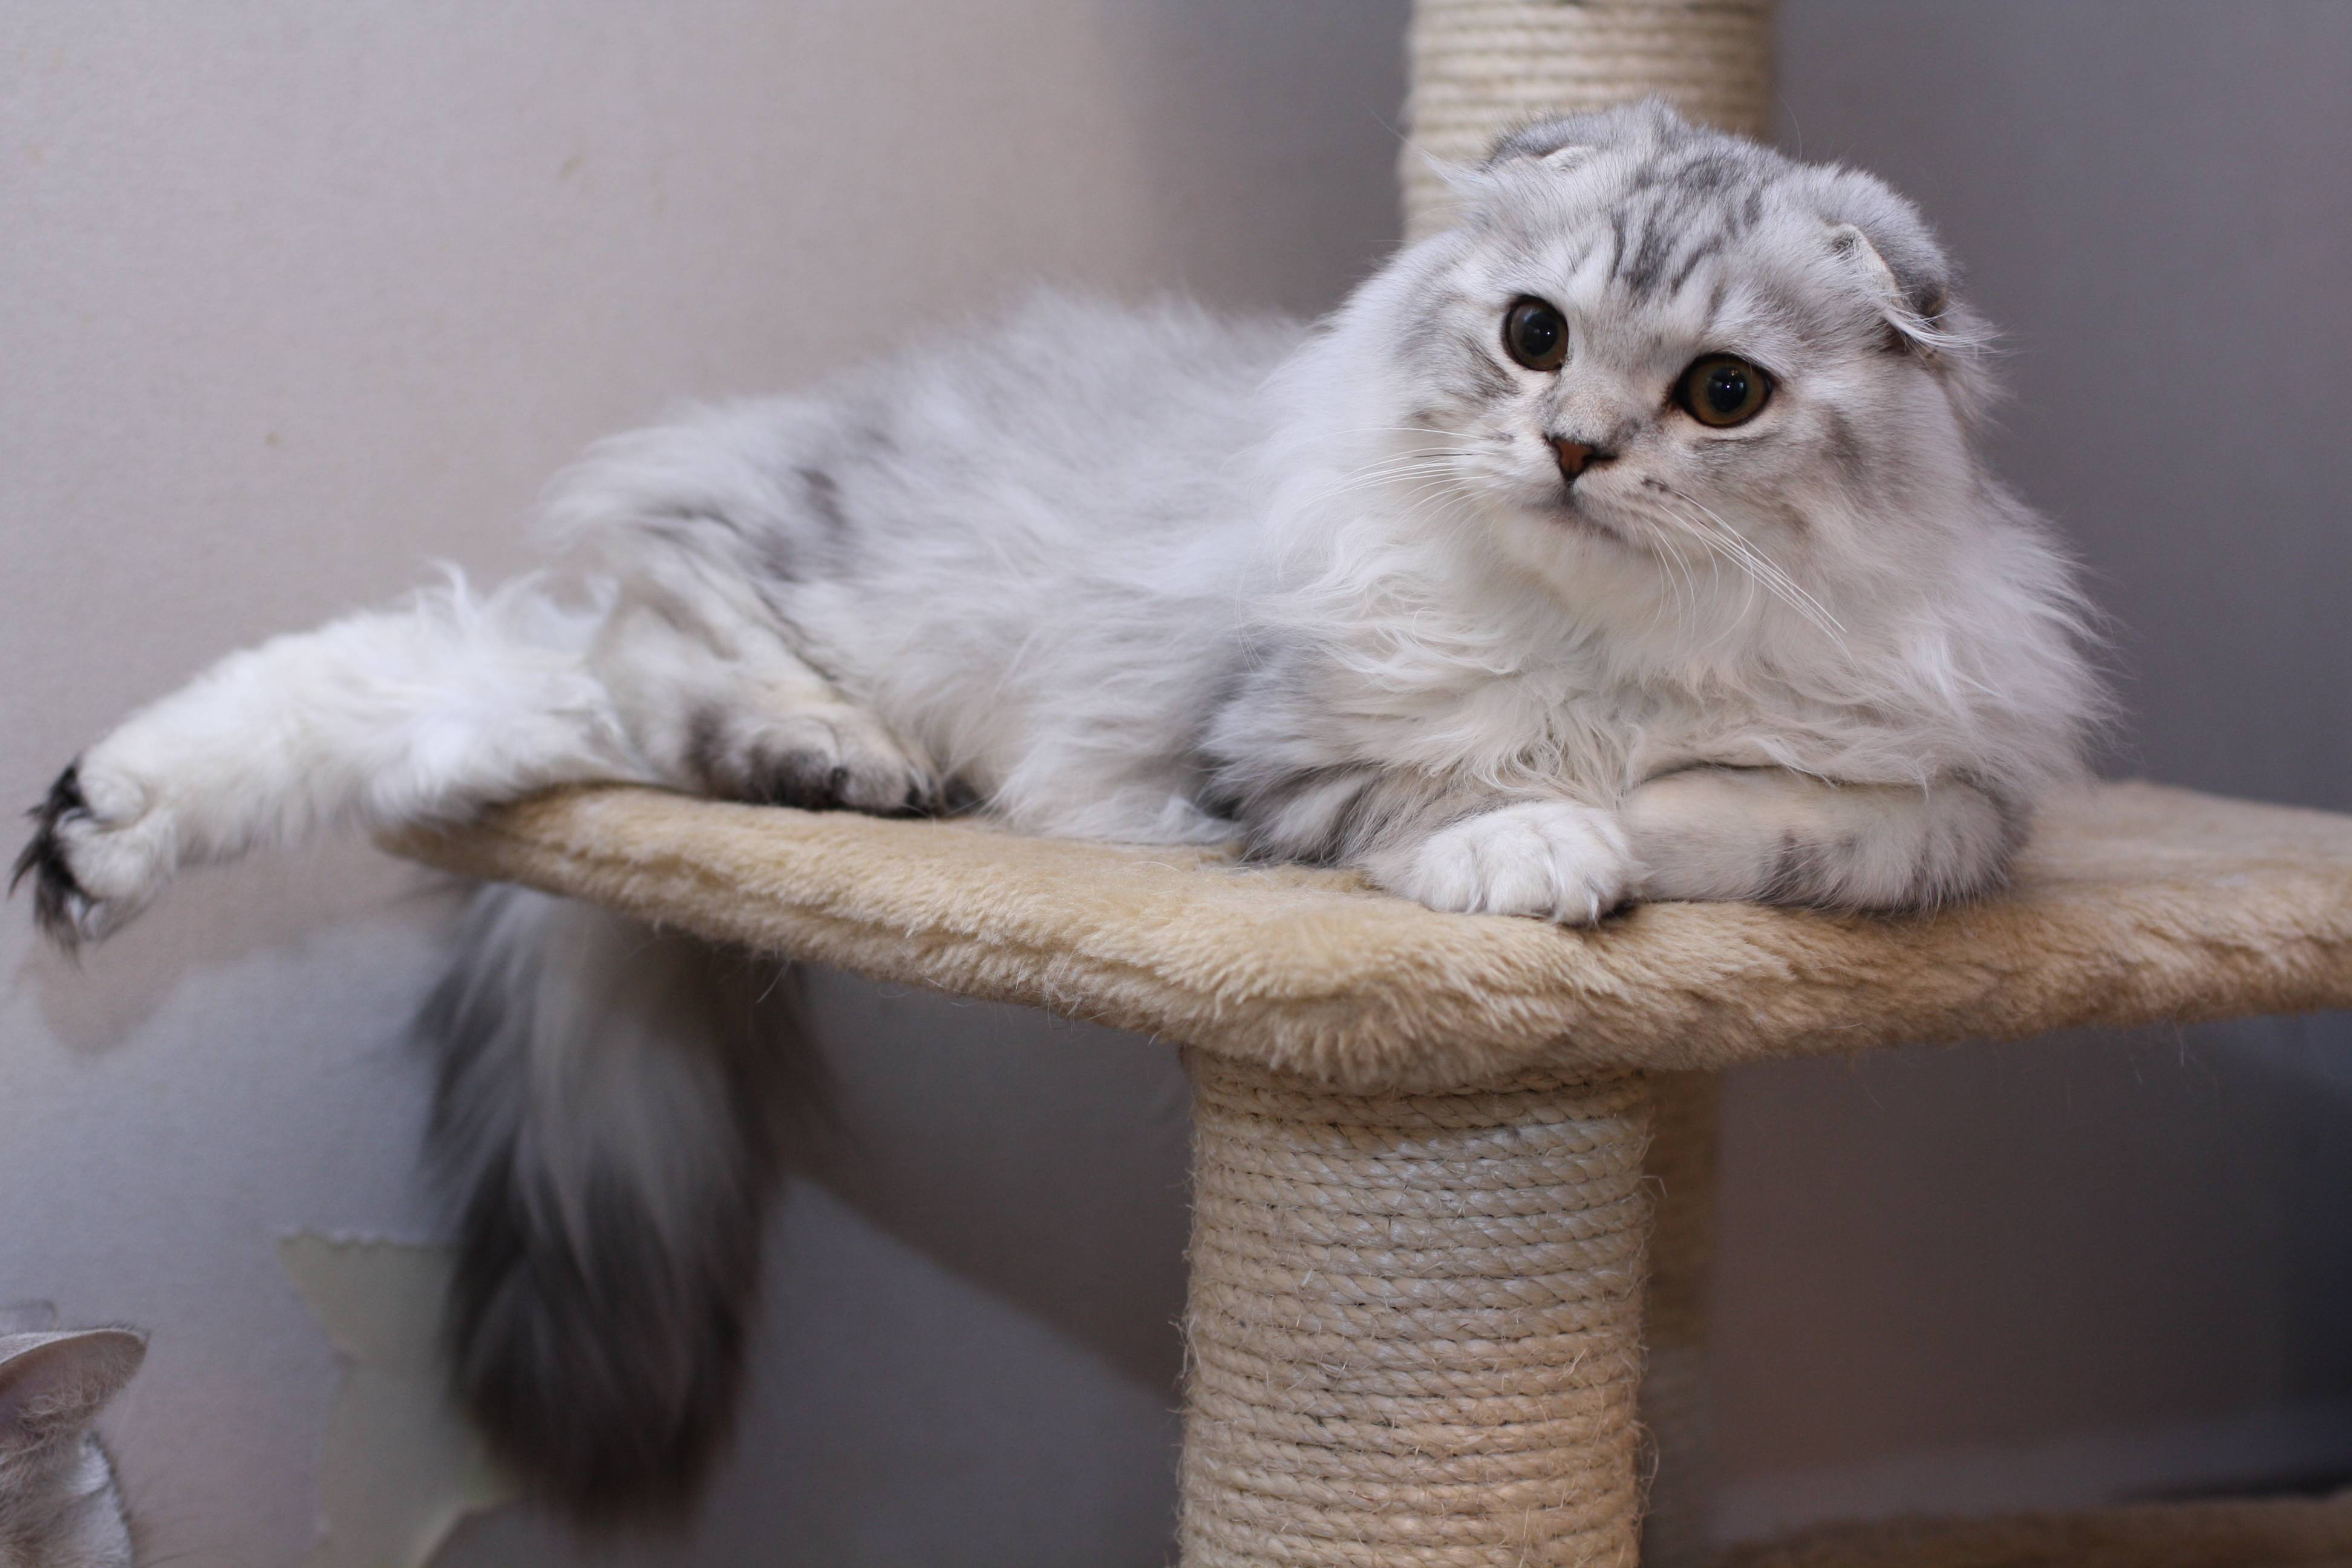 Хайленд-фолд: фото кошки, цена котенка, описание породы и характера